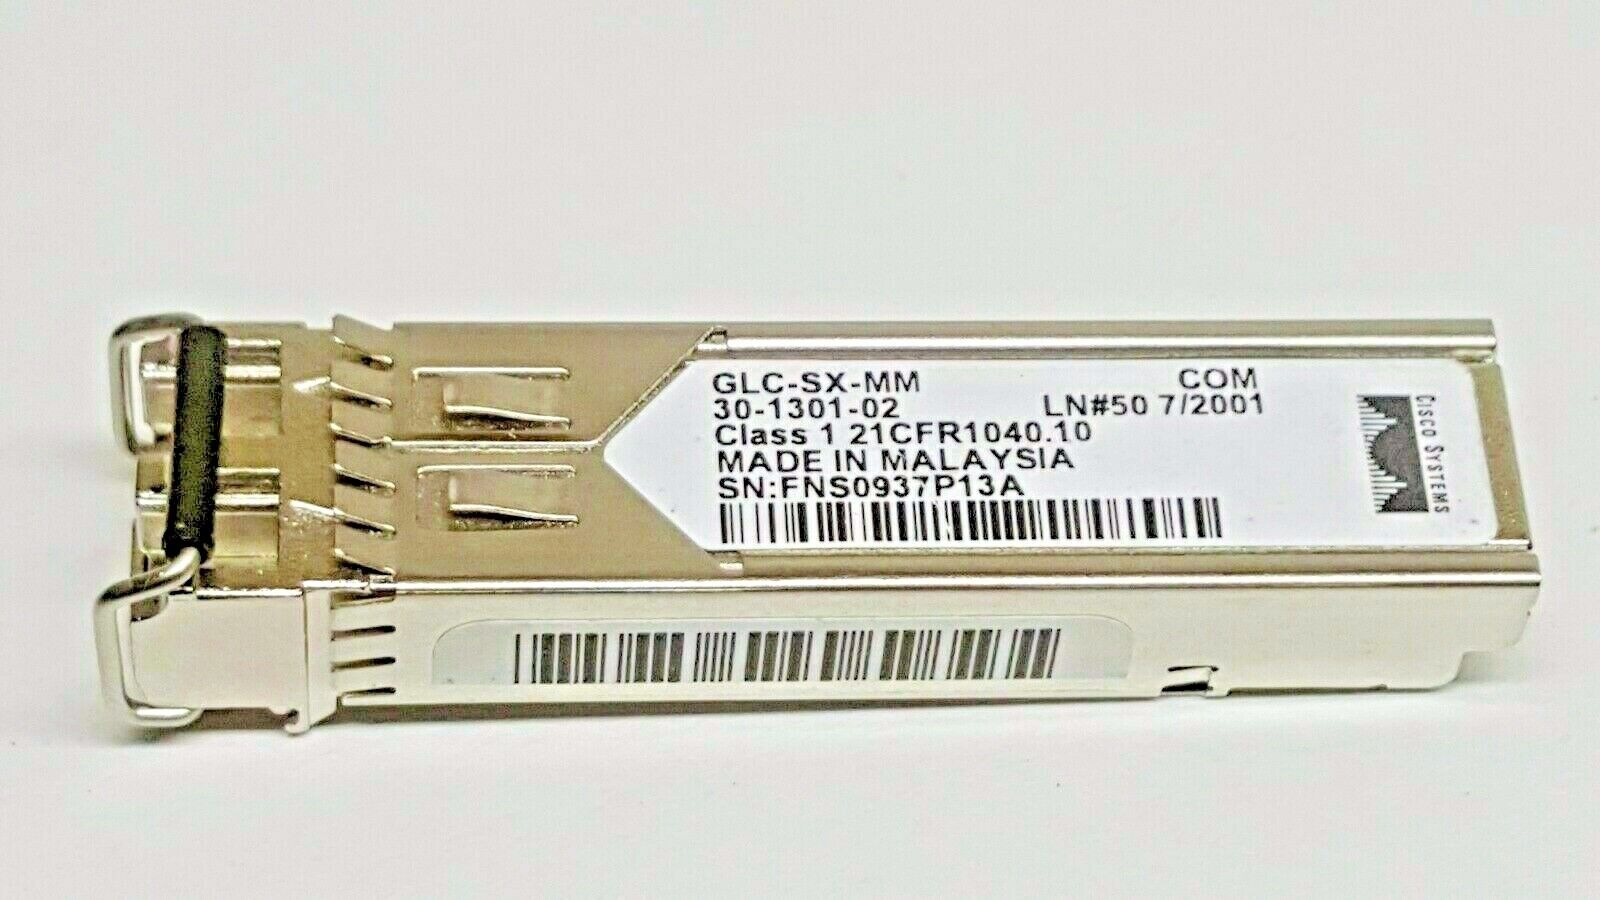 Lot of 5 Cisco GLC-SX-MM SFP Transceiver Module 30-1301-02 Cisco 30-1301-02 - фотография #3